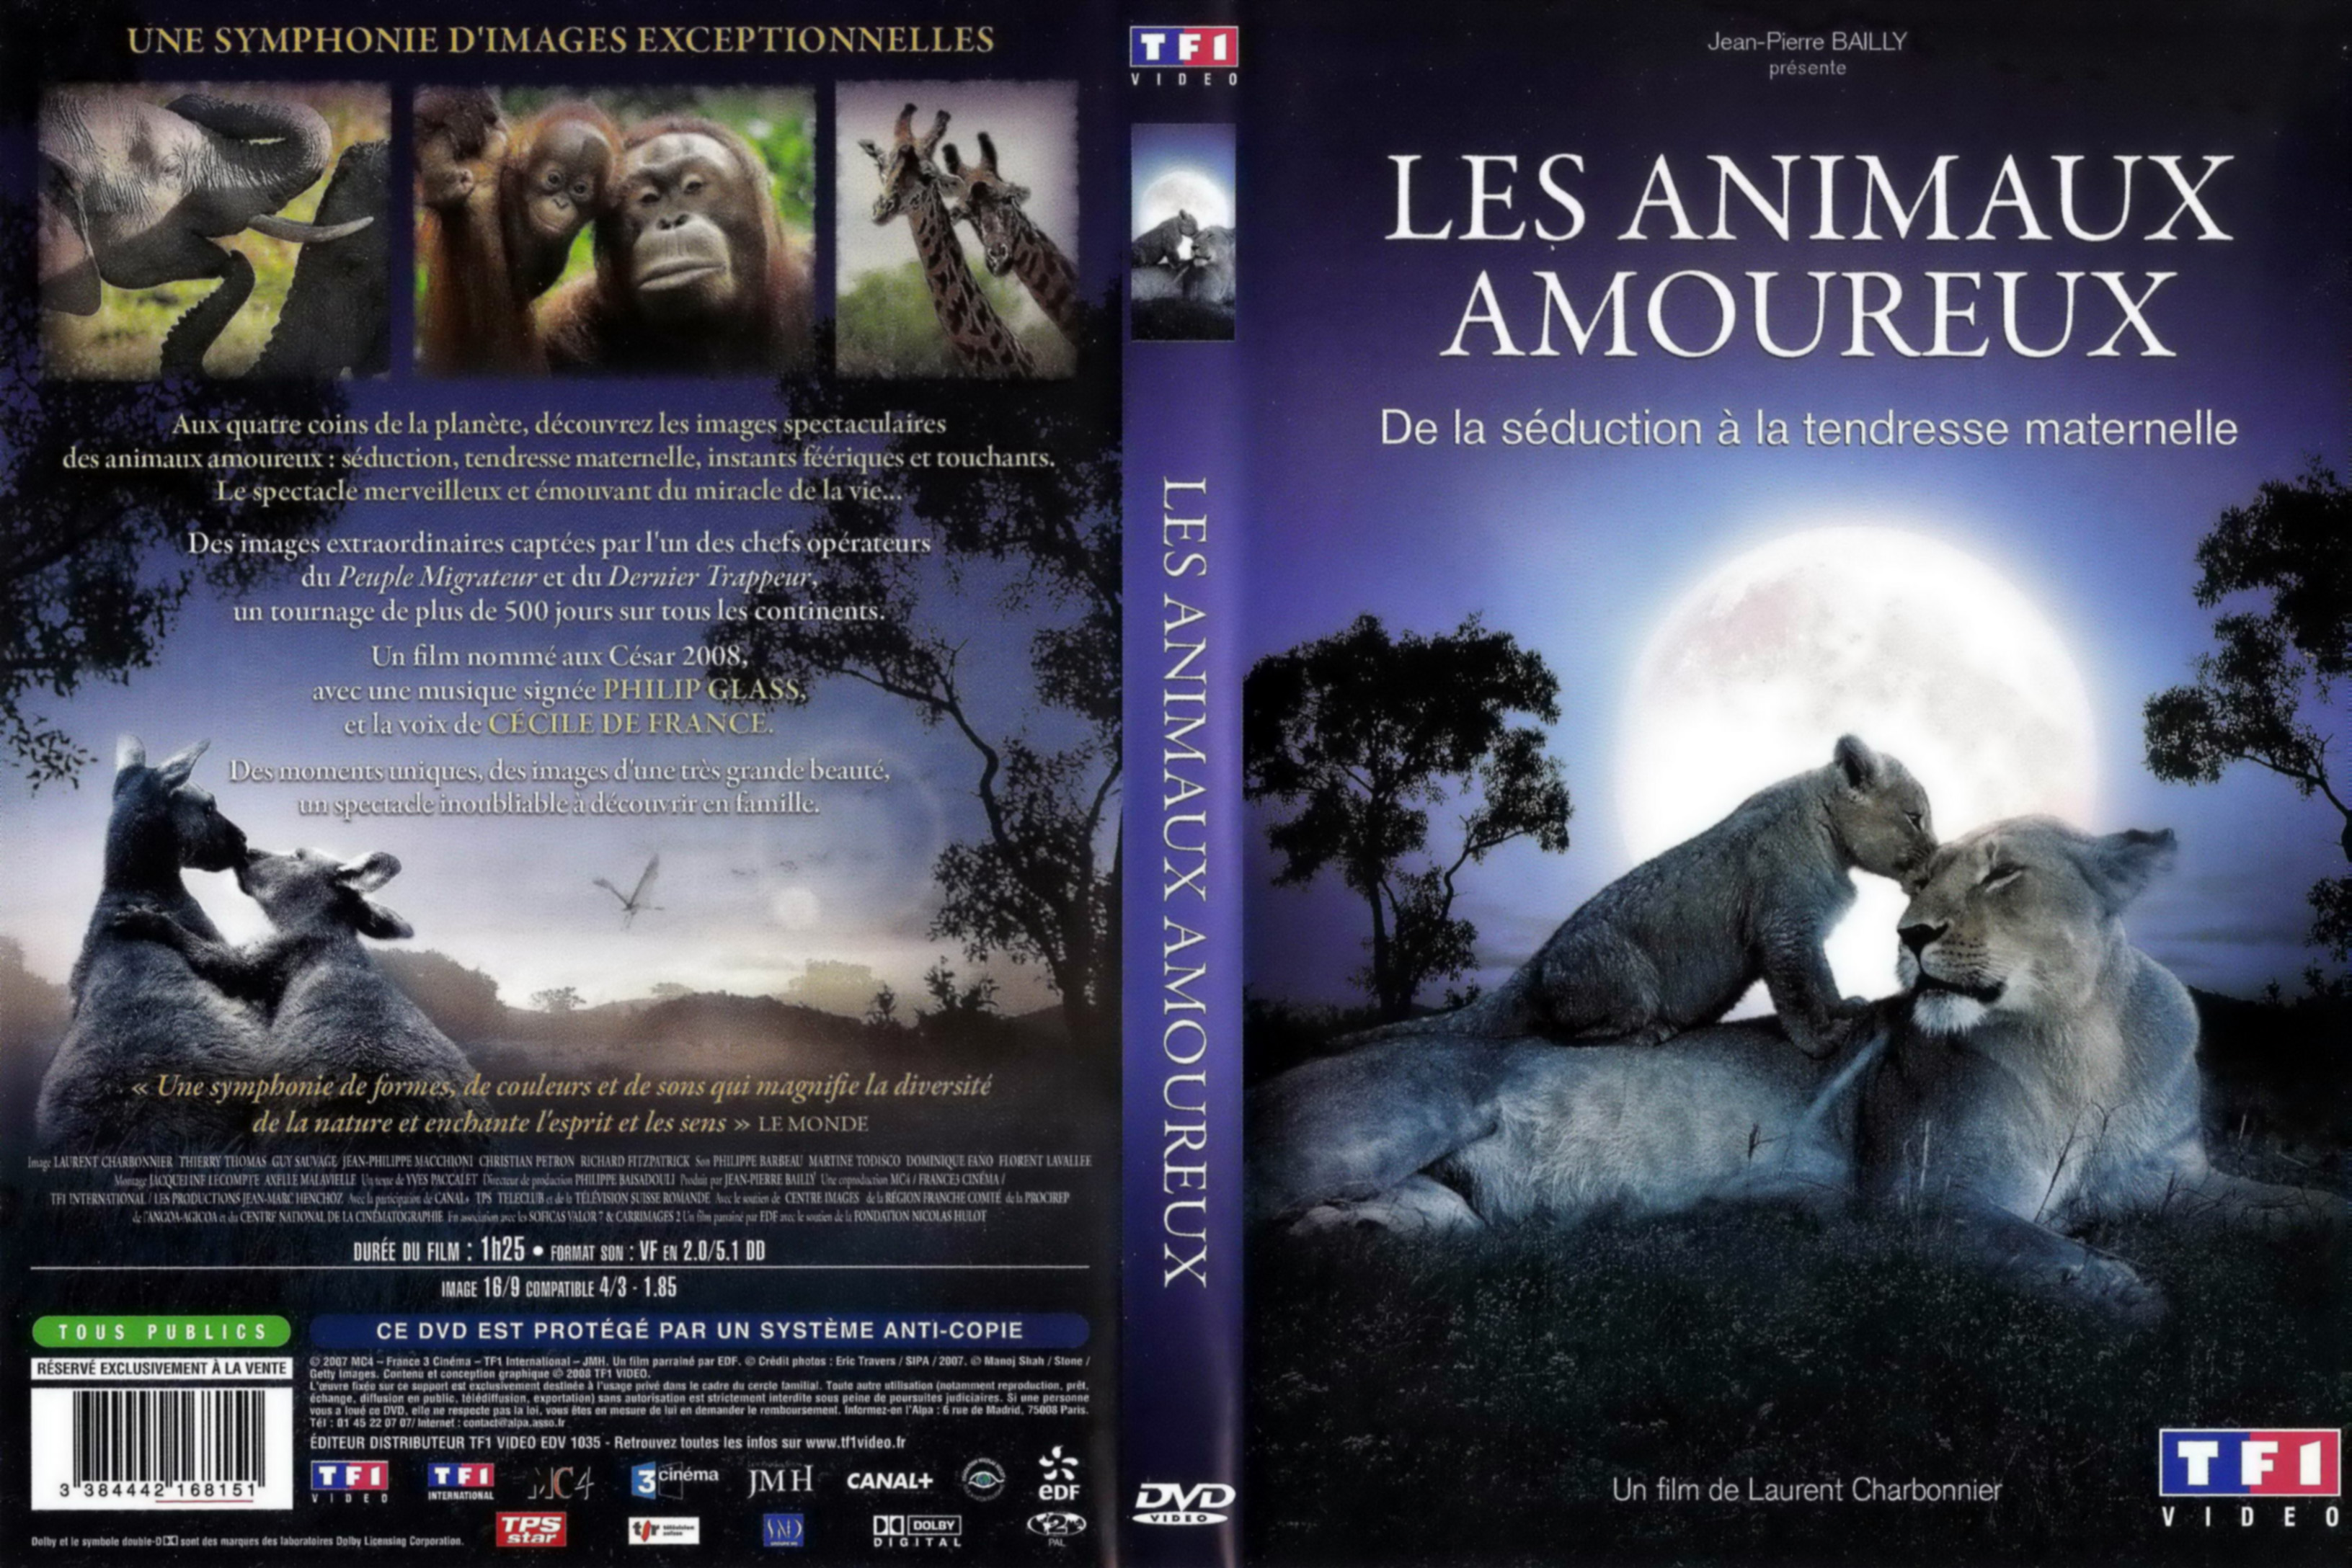 Jaquette DVD Les animaux amoureux v2